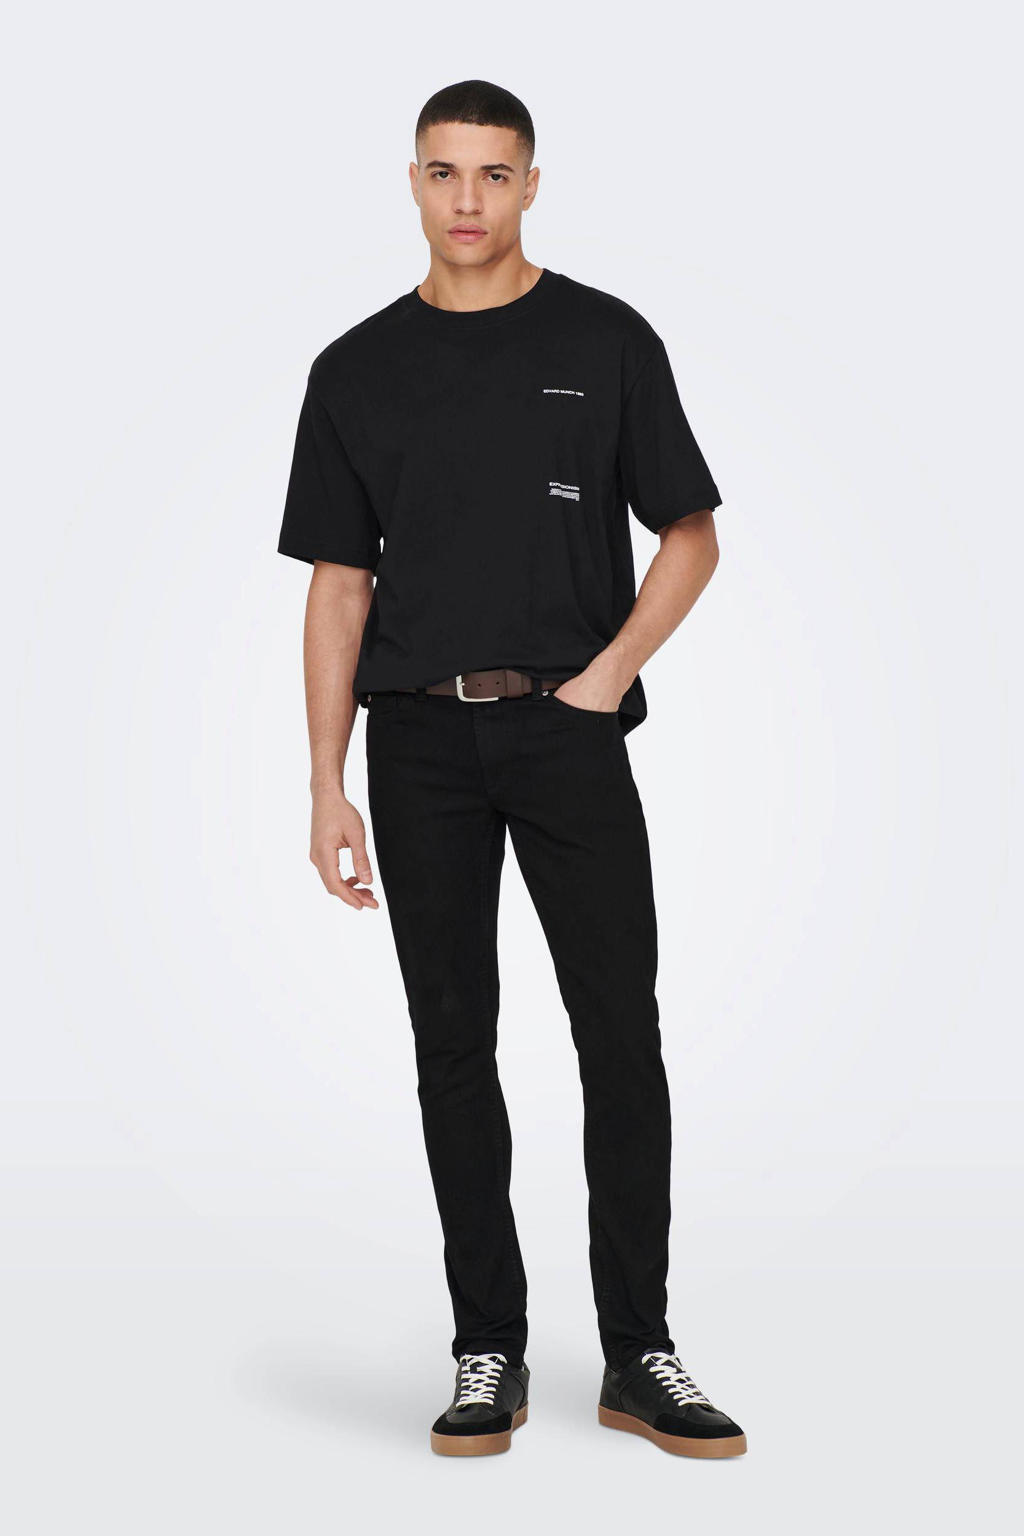 Zwarte heren ONLY & SONS regular fit T-shirt van katoen met backprint, korte mouwen en ronde hals